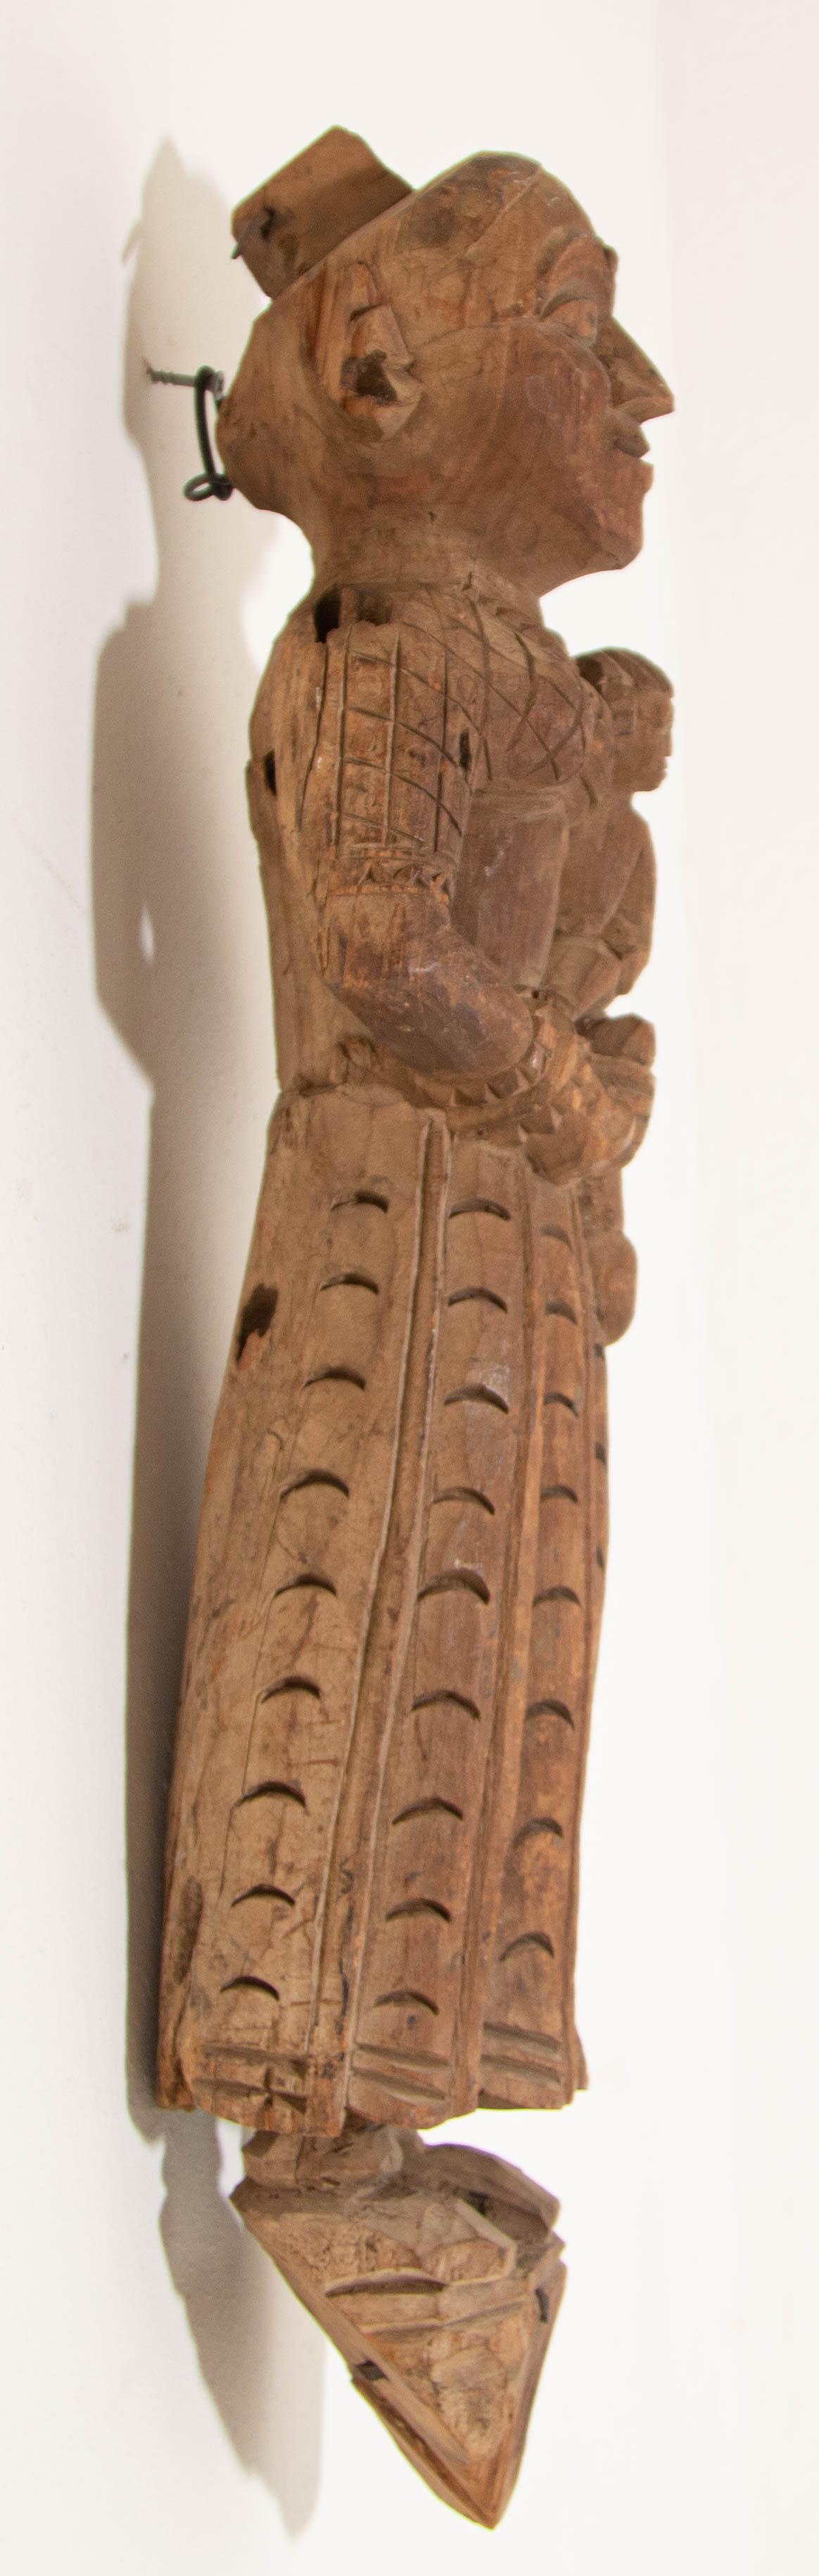 Antike architektonische handgeschnitzte Holztempelskulptur von Mutter und Kind aus Indien.
Handgeschnitzte indische Tempelschnitzerei Statue aus Gujarat, die Mutter und Kind darstellt.
Wahrscheinlich hält Yasodha Krishna. 
Eine indische